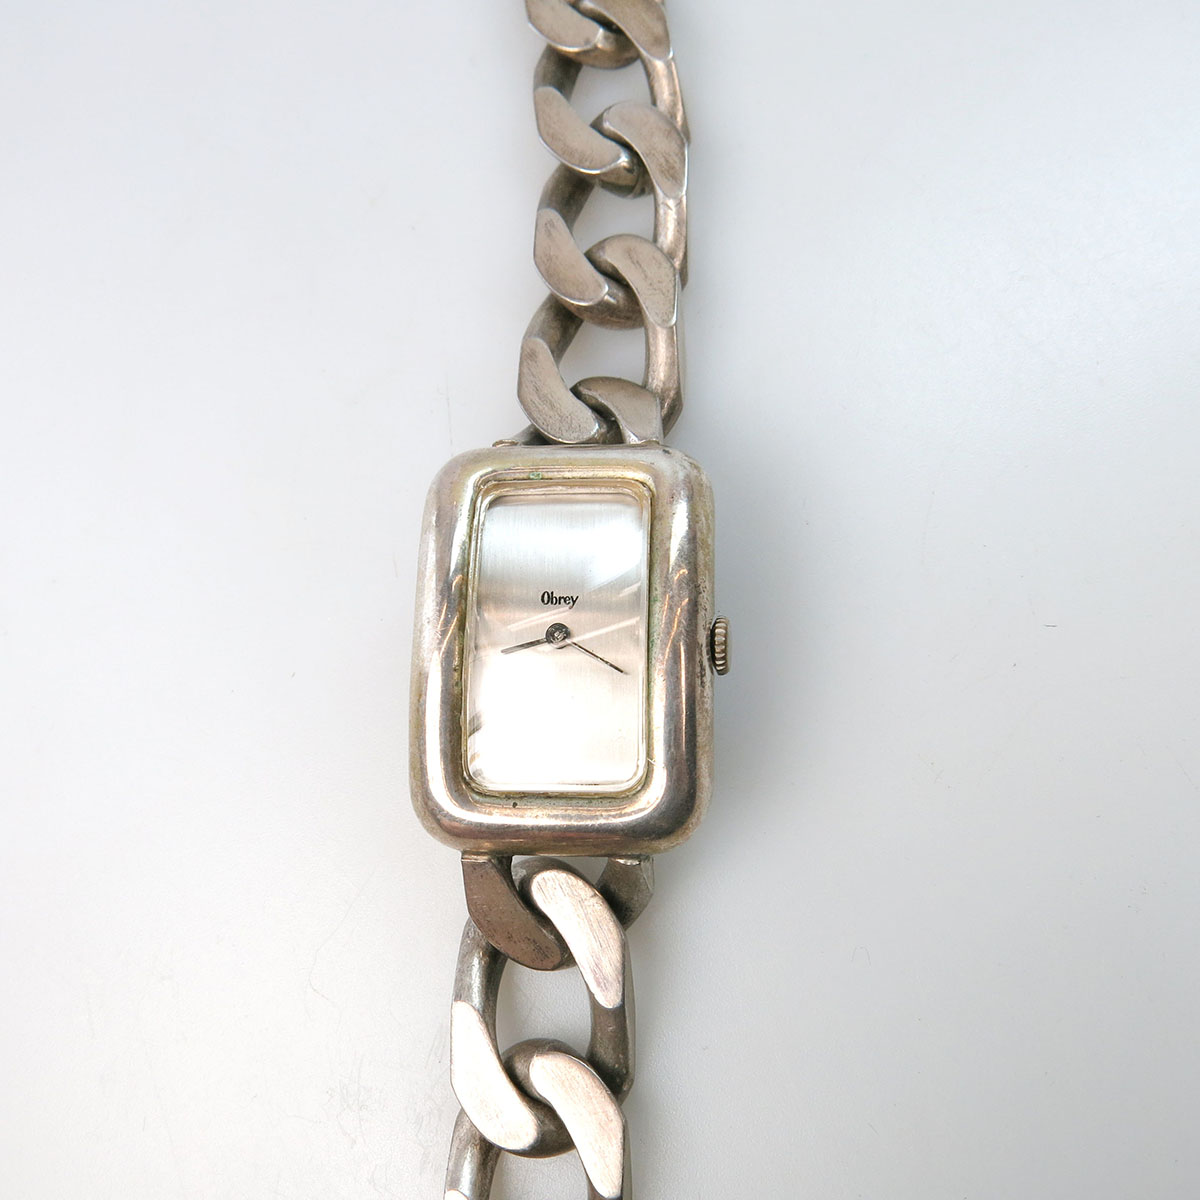 Obrey Wristwatch in a French silver case